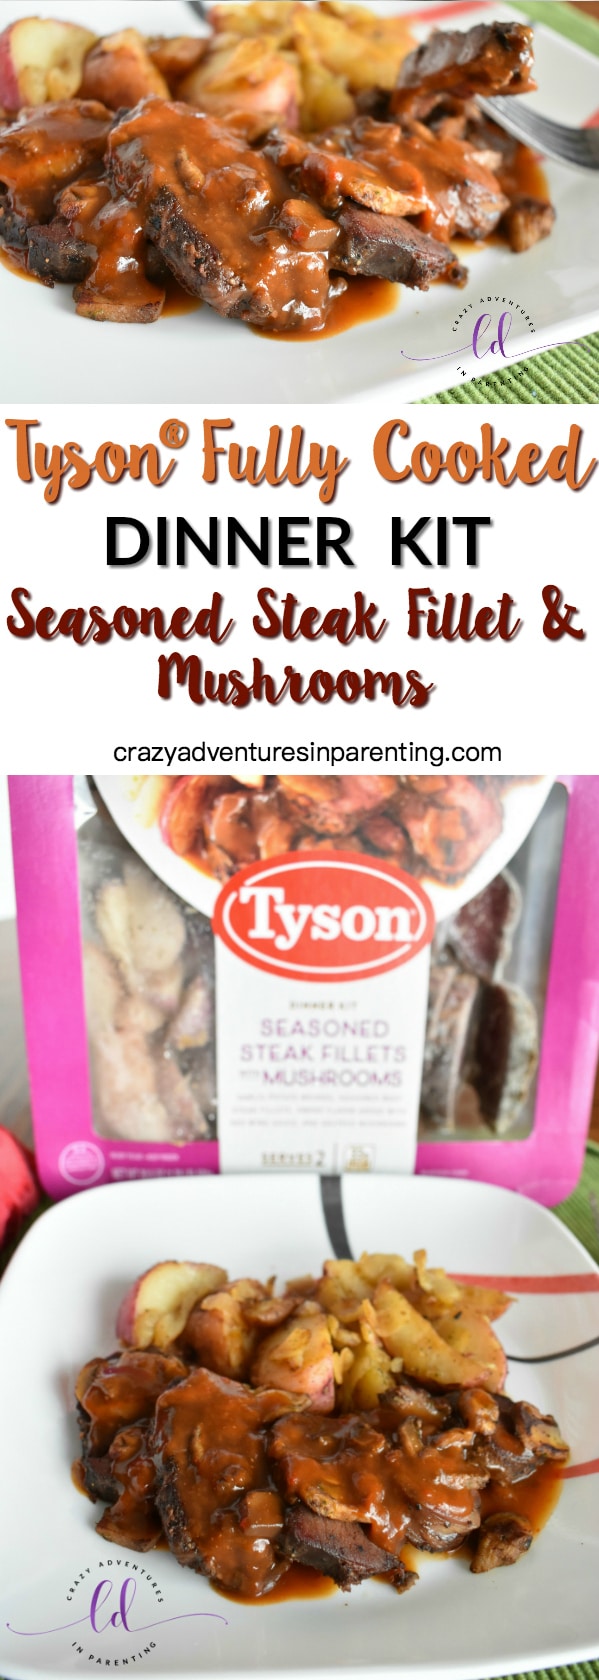 Tyson Fully Cooked Dinner Kit - Seasoned Steak Fillet & Mushrooms review